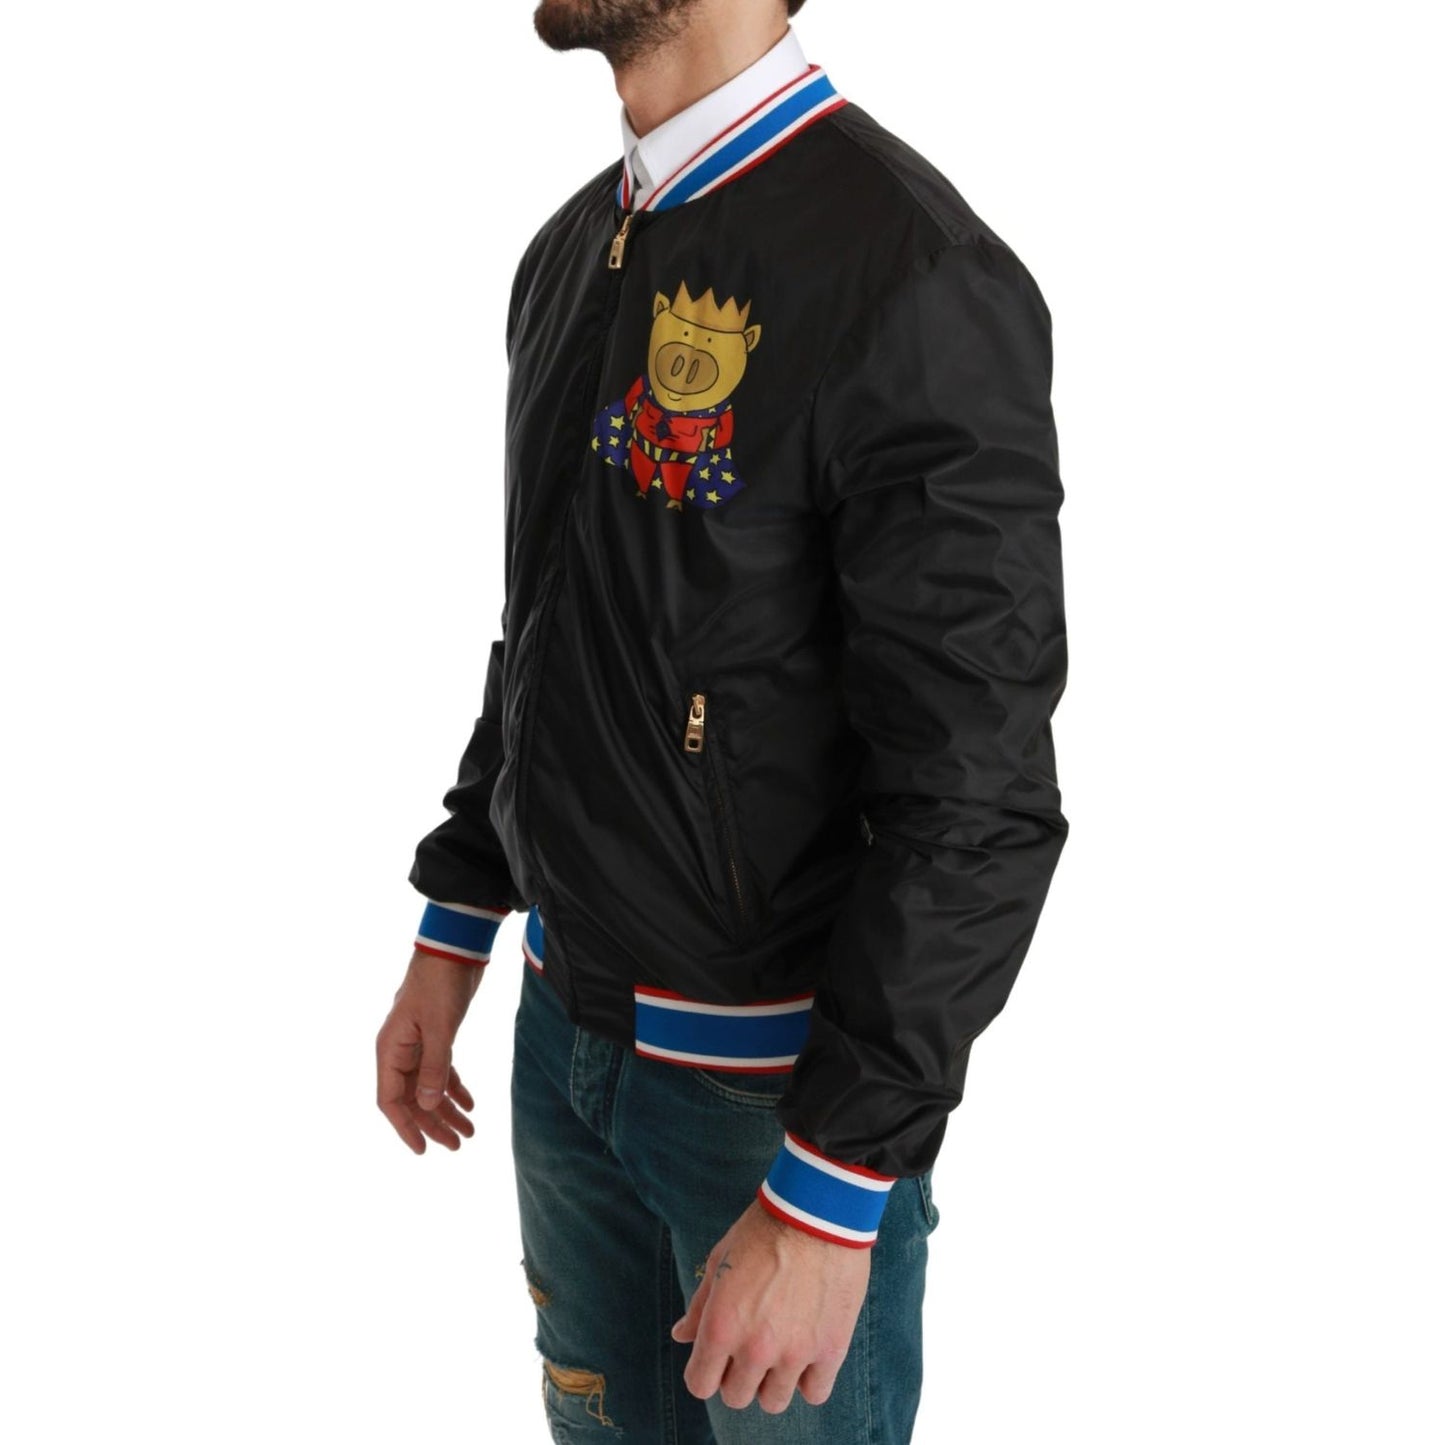 Dolce & Gabbana Elegant Multicolor Motive Bomber Jacket Coats & Jackets black-year-of-the-pig-bomber-jacket IMG_0115-scaled-59579bf8-c35.jpg